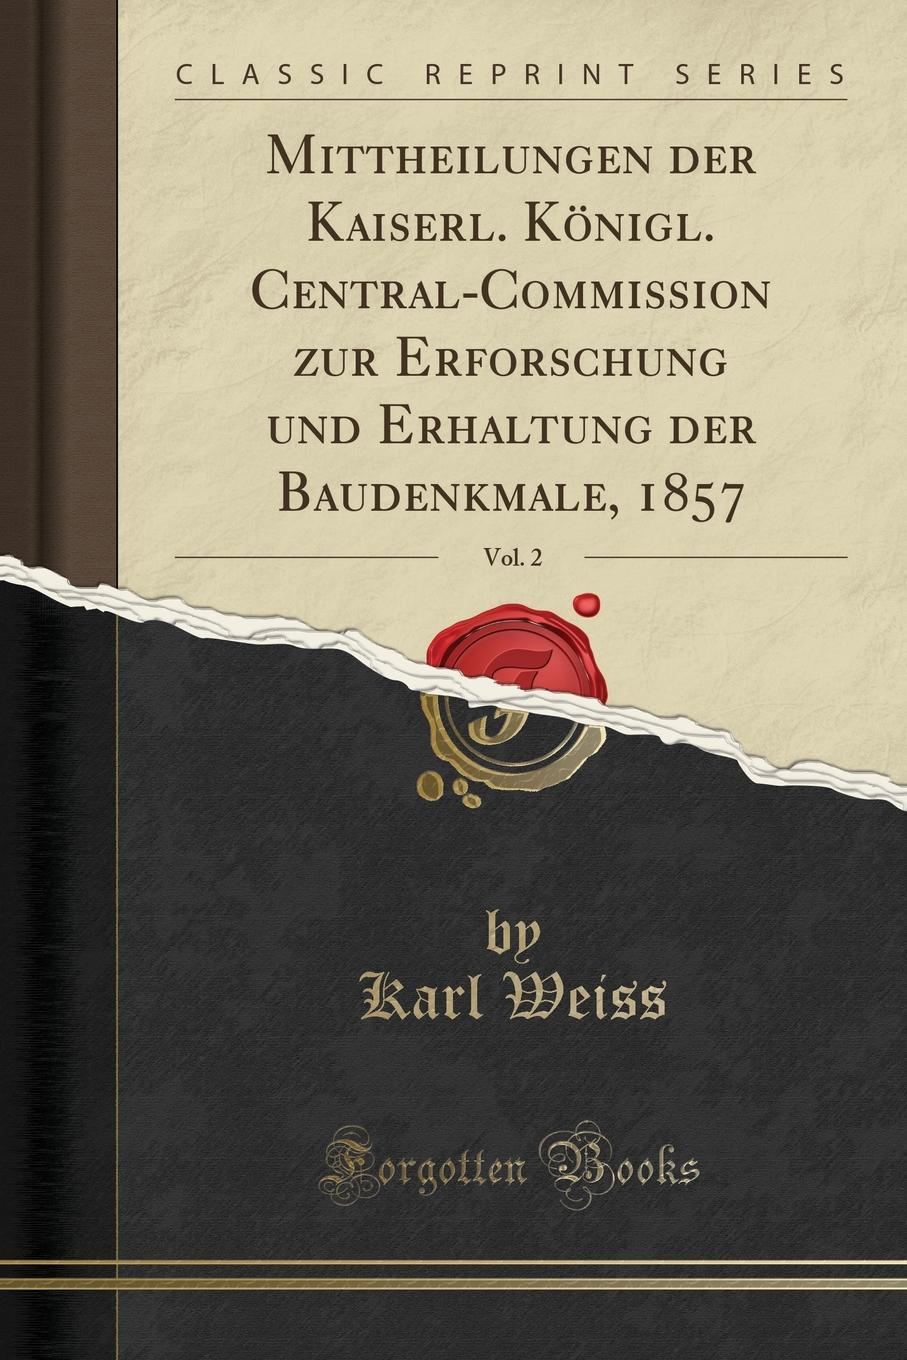 Mittheilungen der Kaiserl. Konigl. Central-Commission zur Erforschung und Erhaltung der Baudenkmale, 1857, Vol. 2 (Classic Reprint)